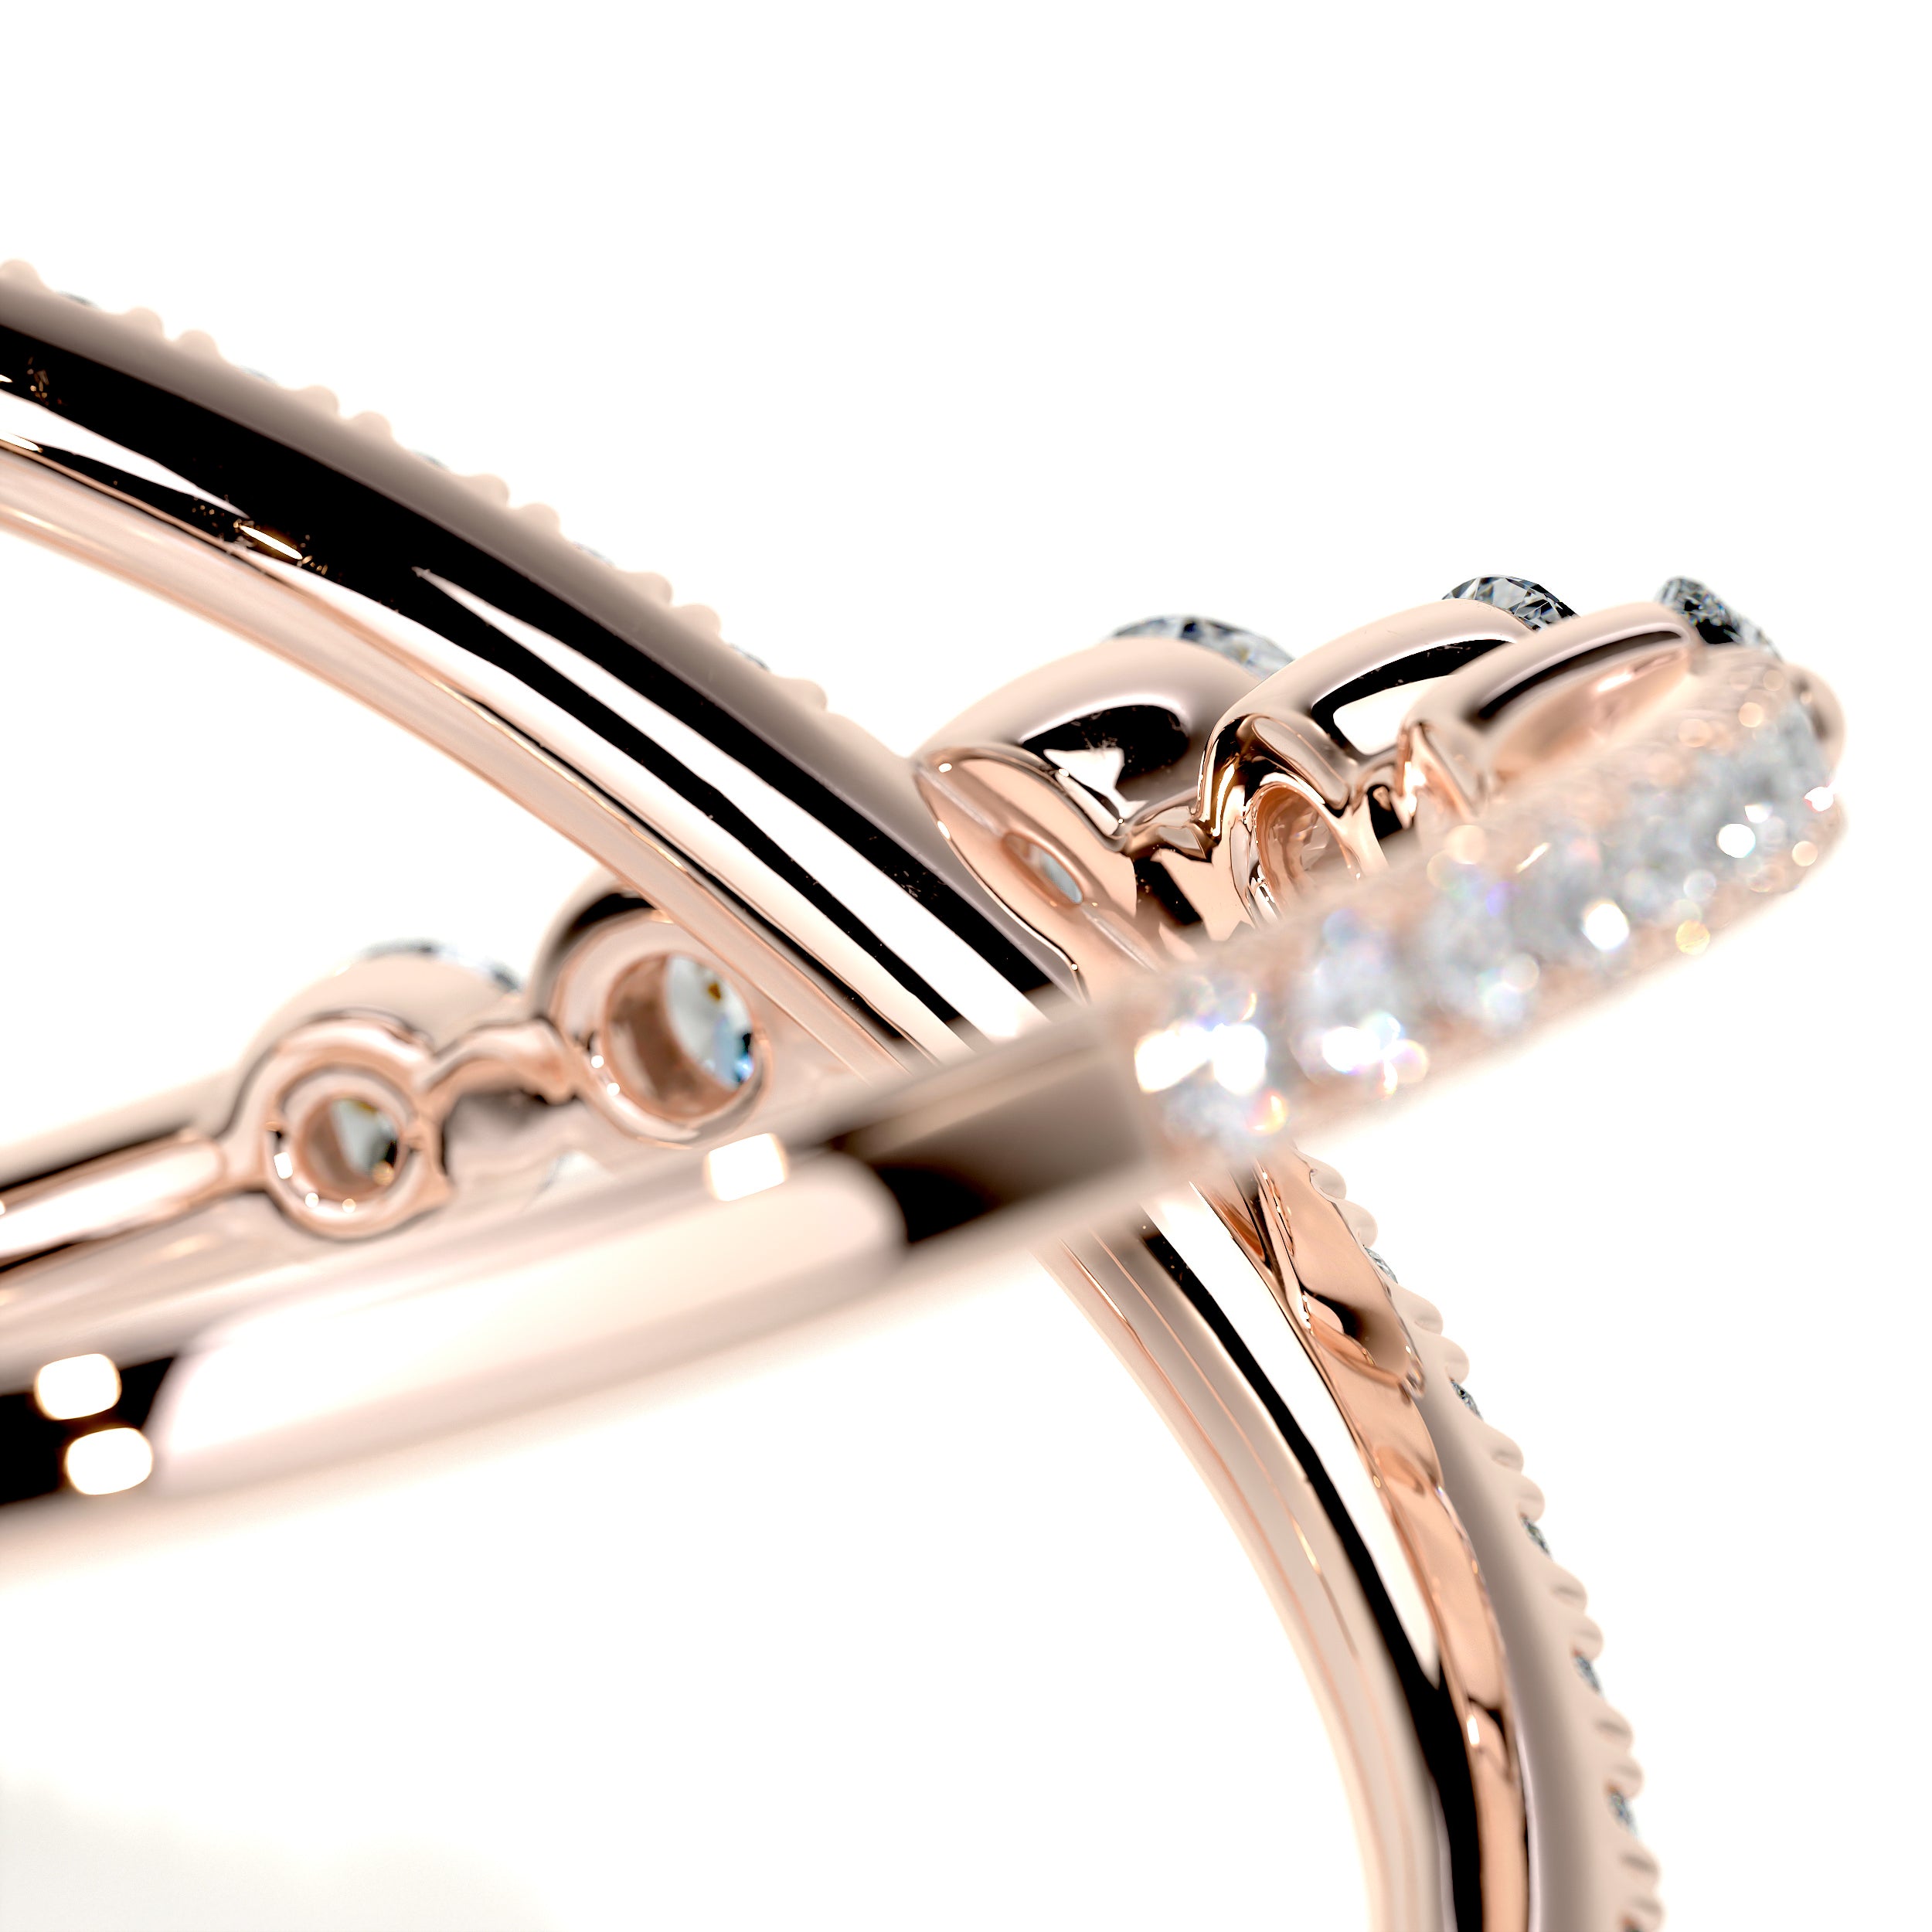 Iris Fashion Diamond Ring   (0.42 Carat) -14K Rose Gold